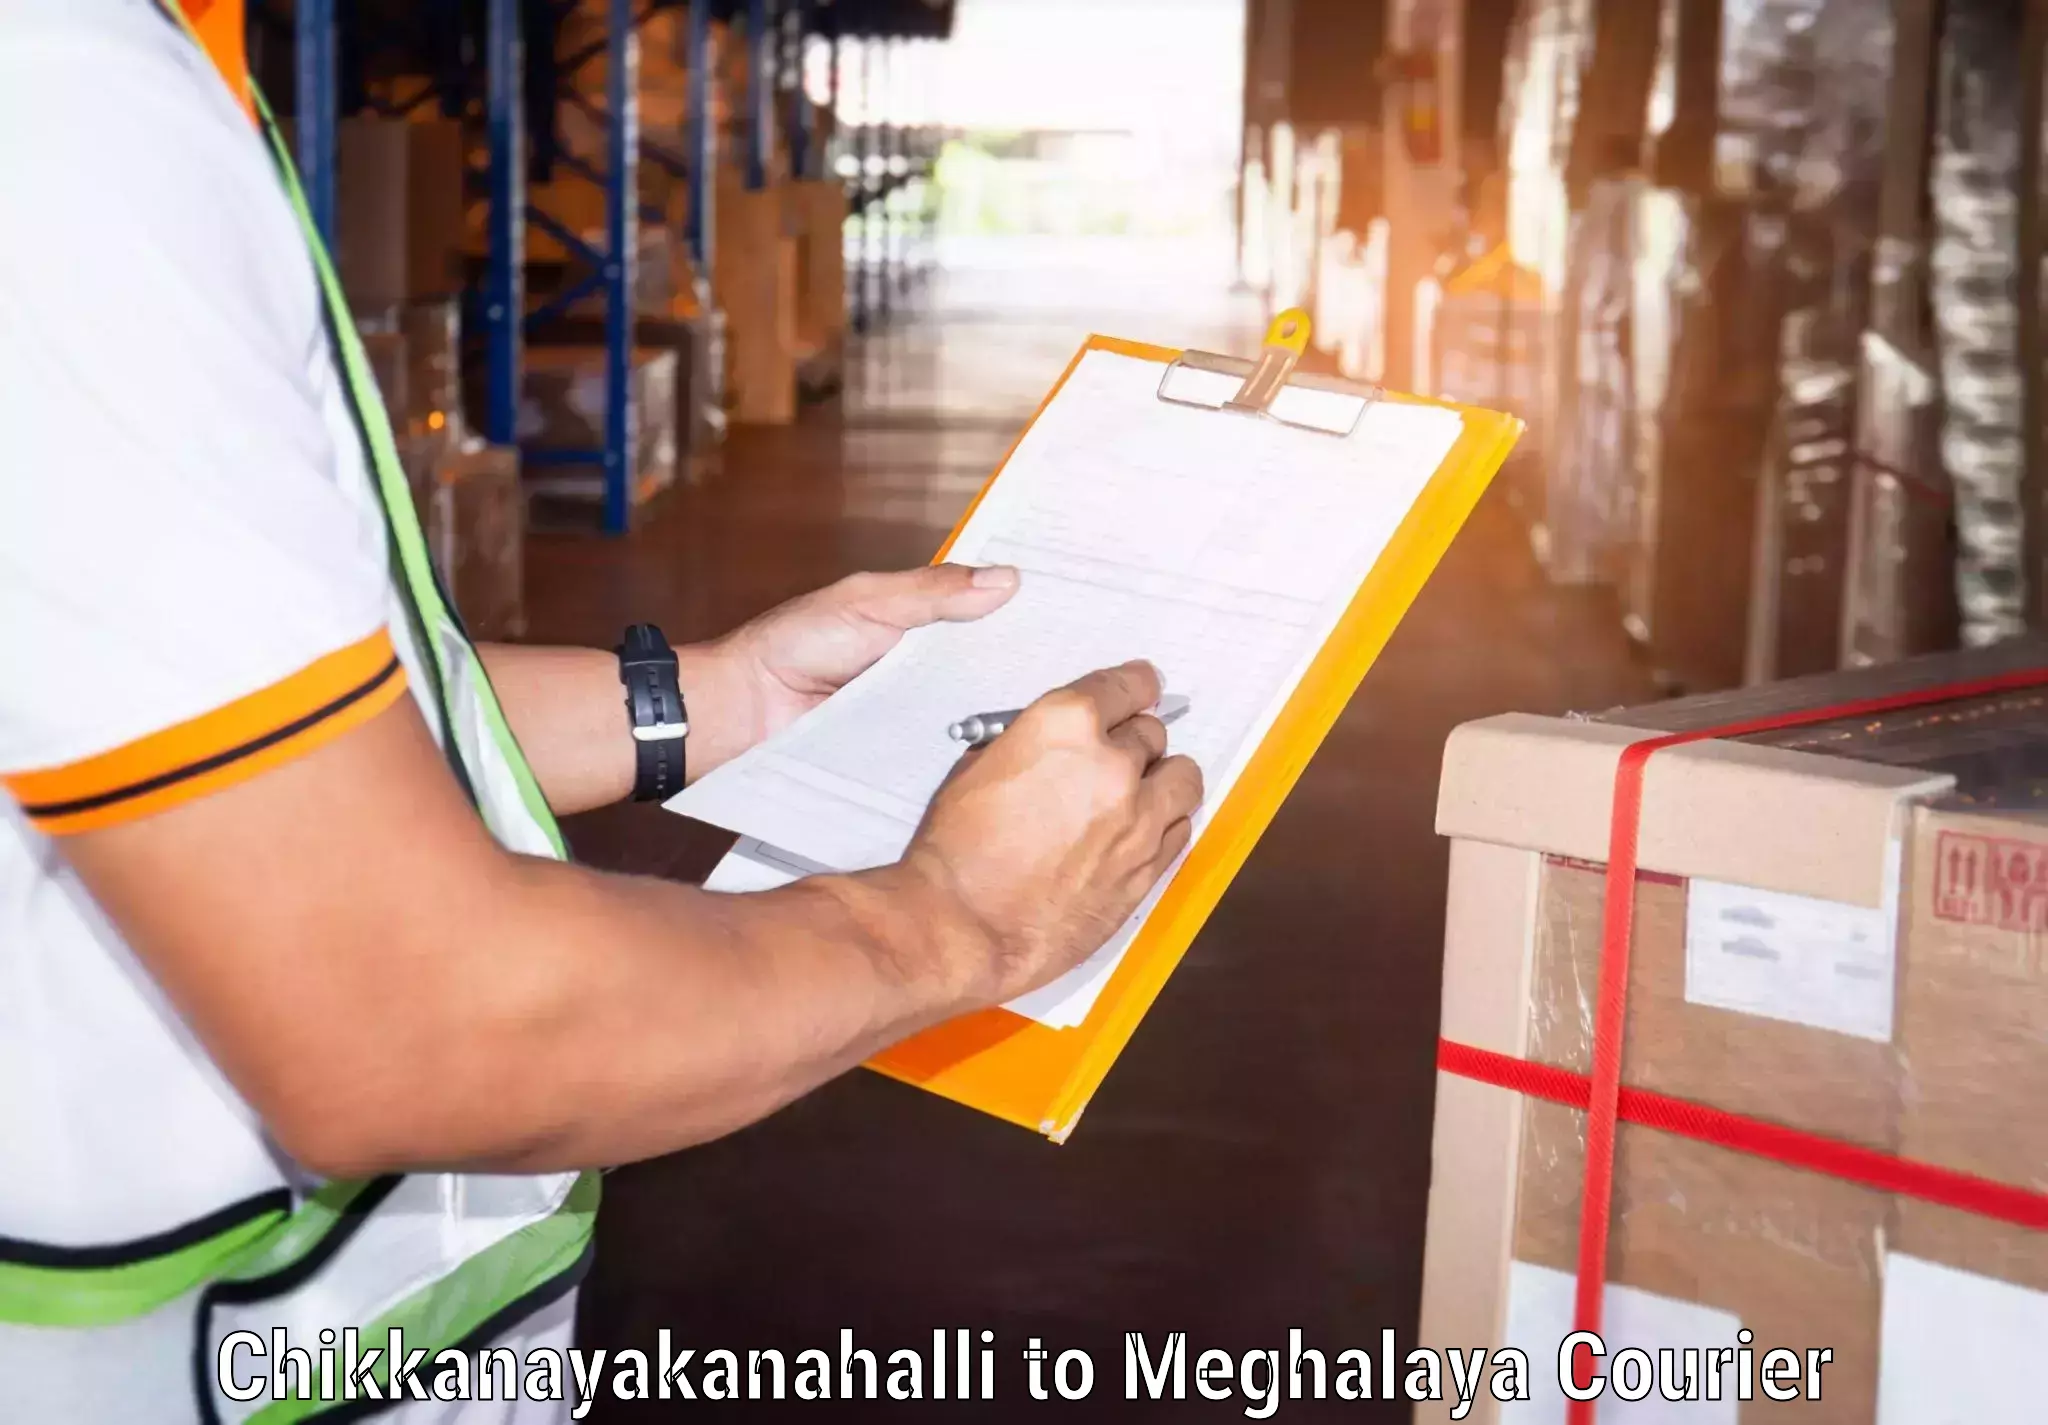 Express logistics service Chikkanayakanahalli to Meghalaya